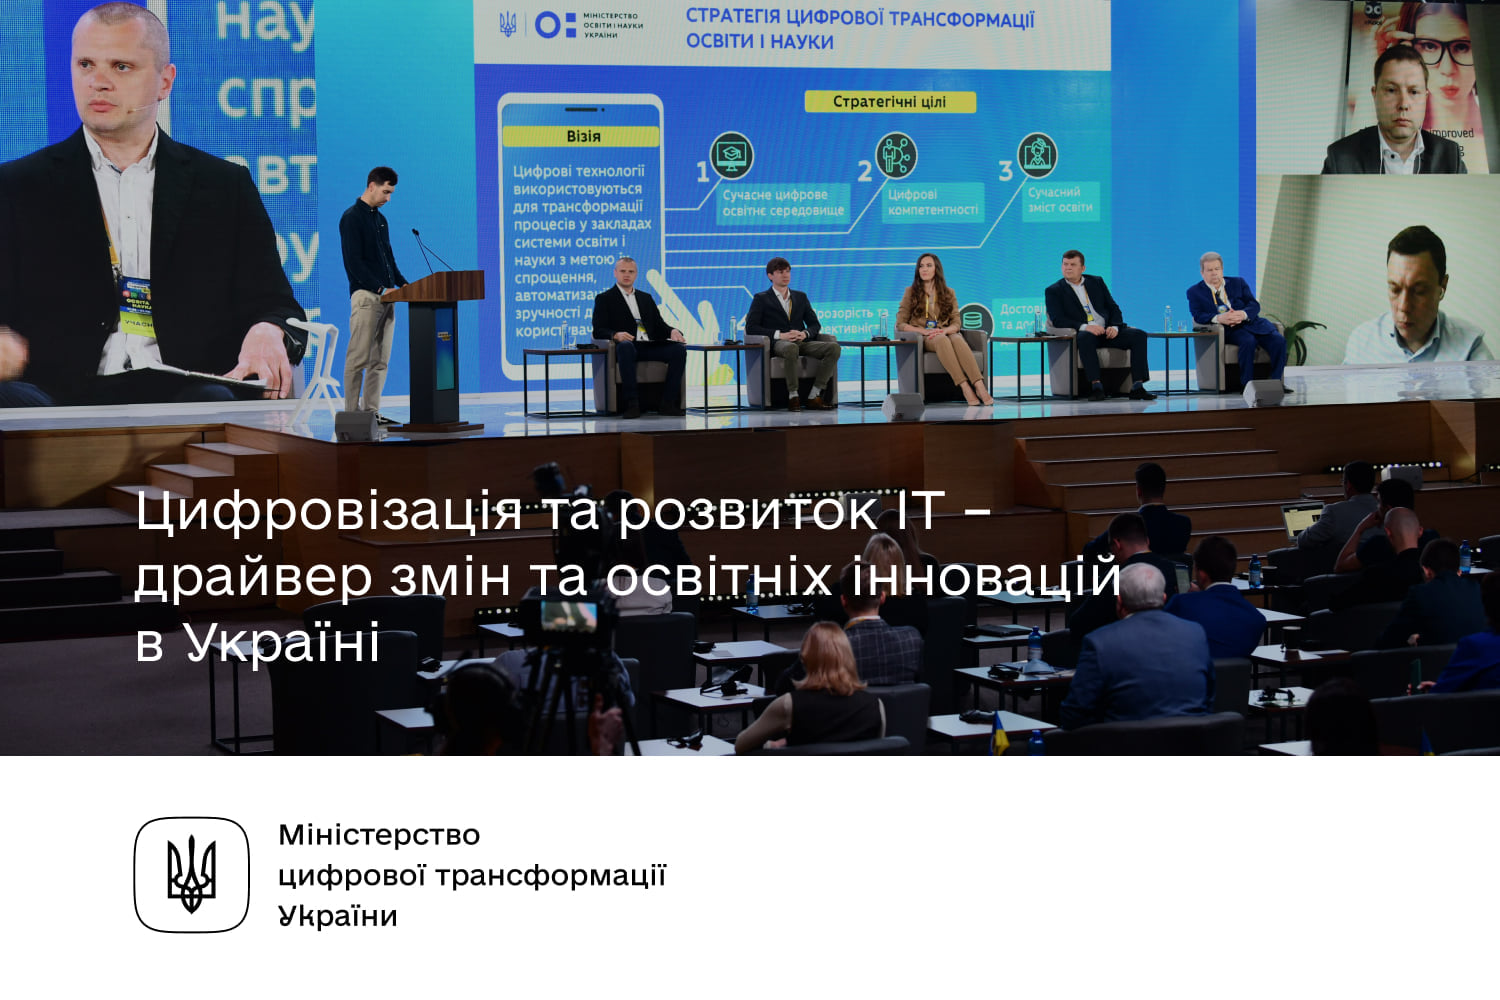 Цифровізація та розвиток IT – драйвер освітніх інновацій в Україні